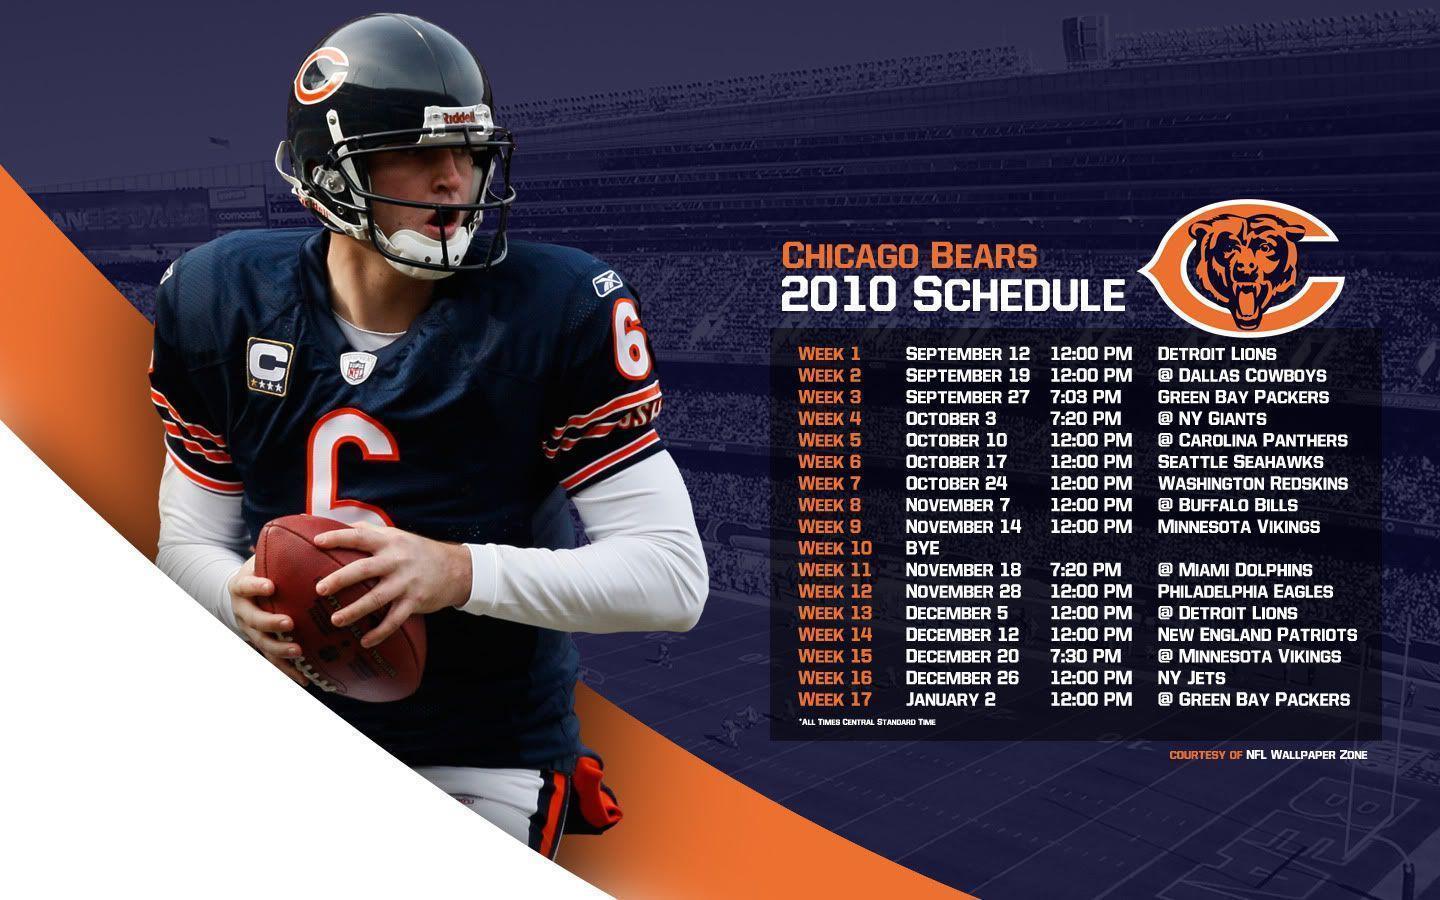 NFL Wallpaper Zone: 2010 Chicago Bears Schedule Wallpaper